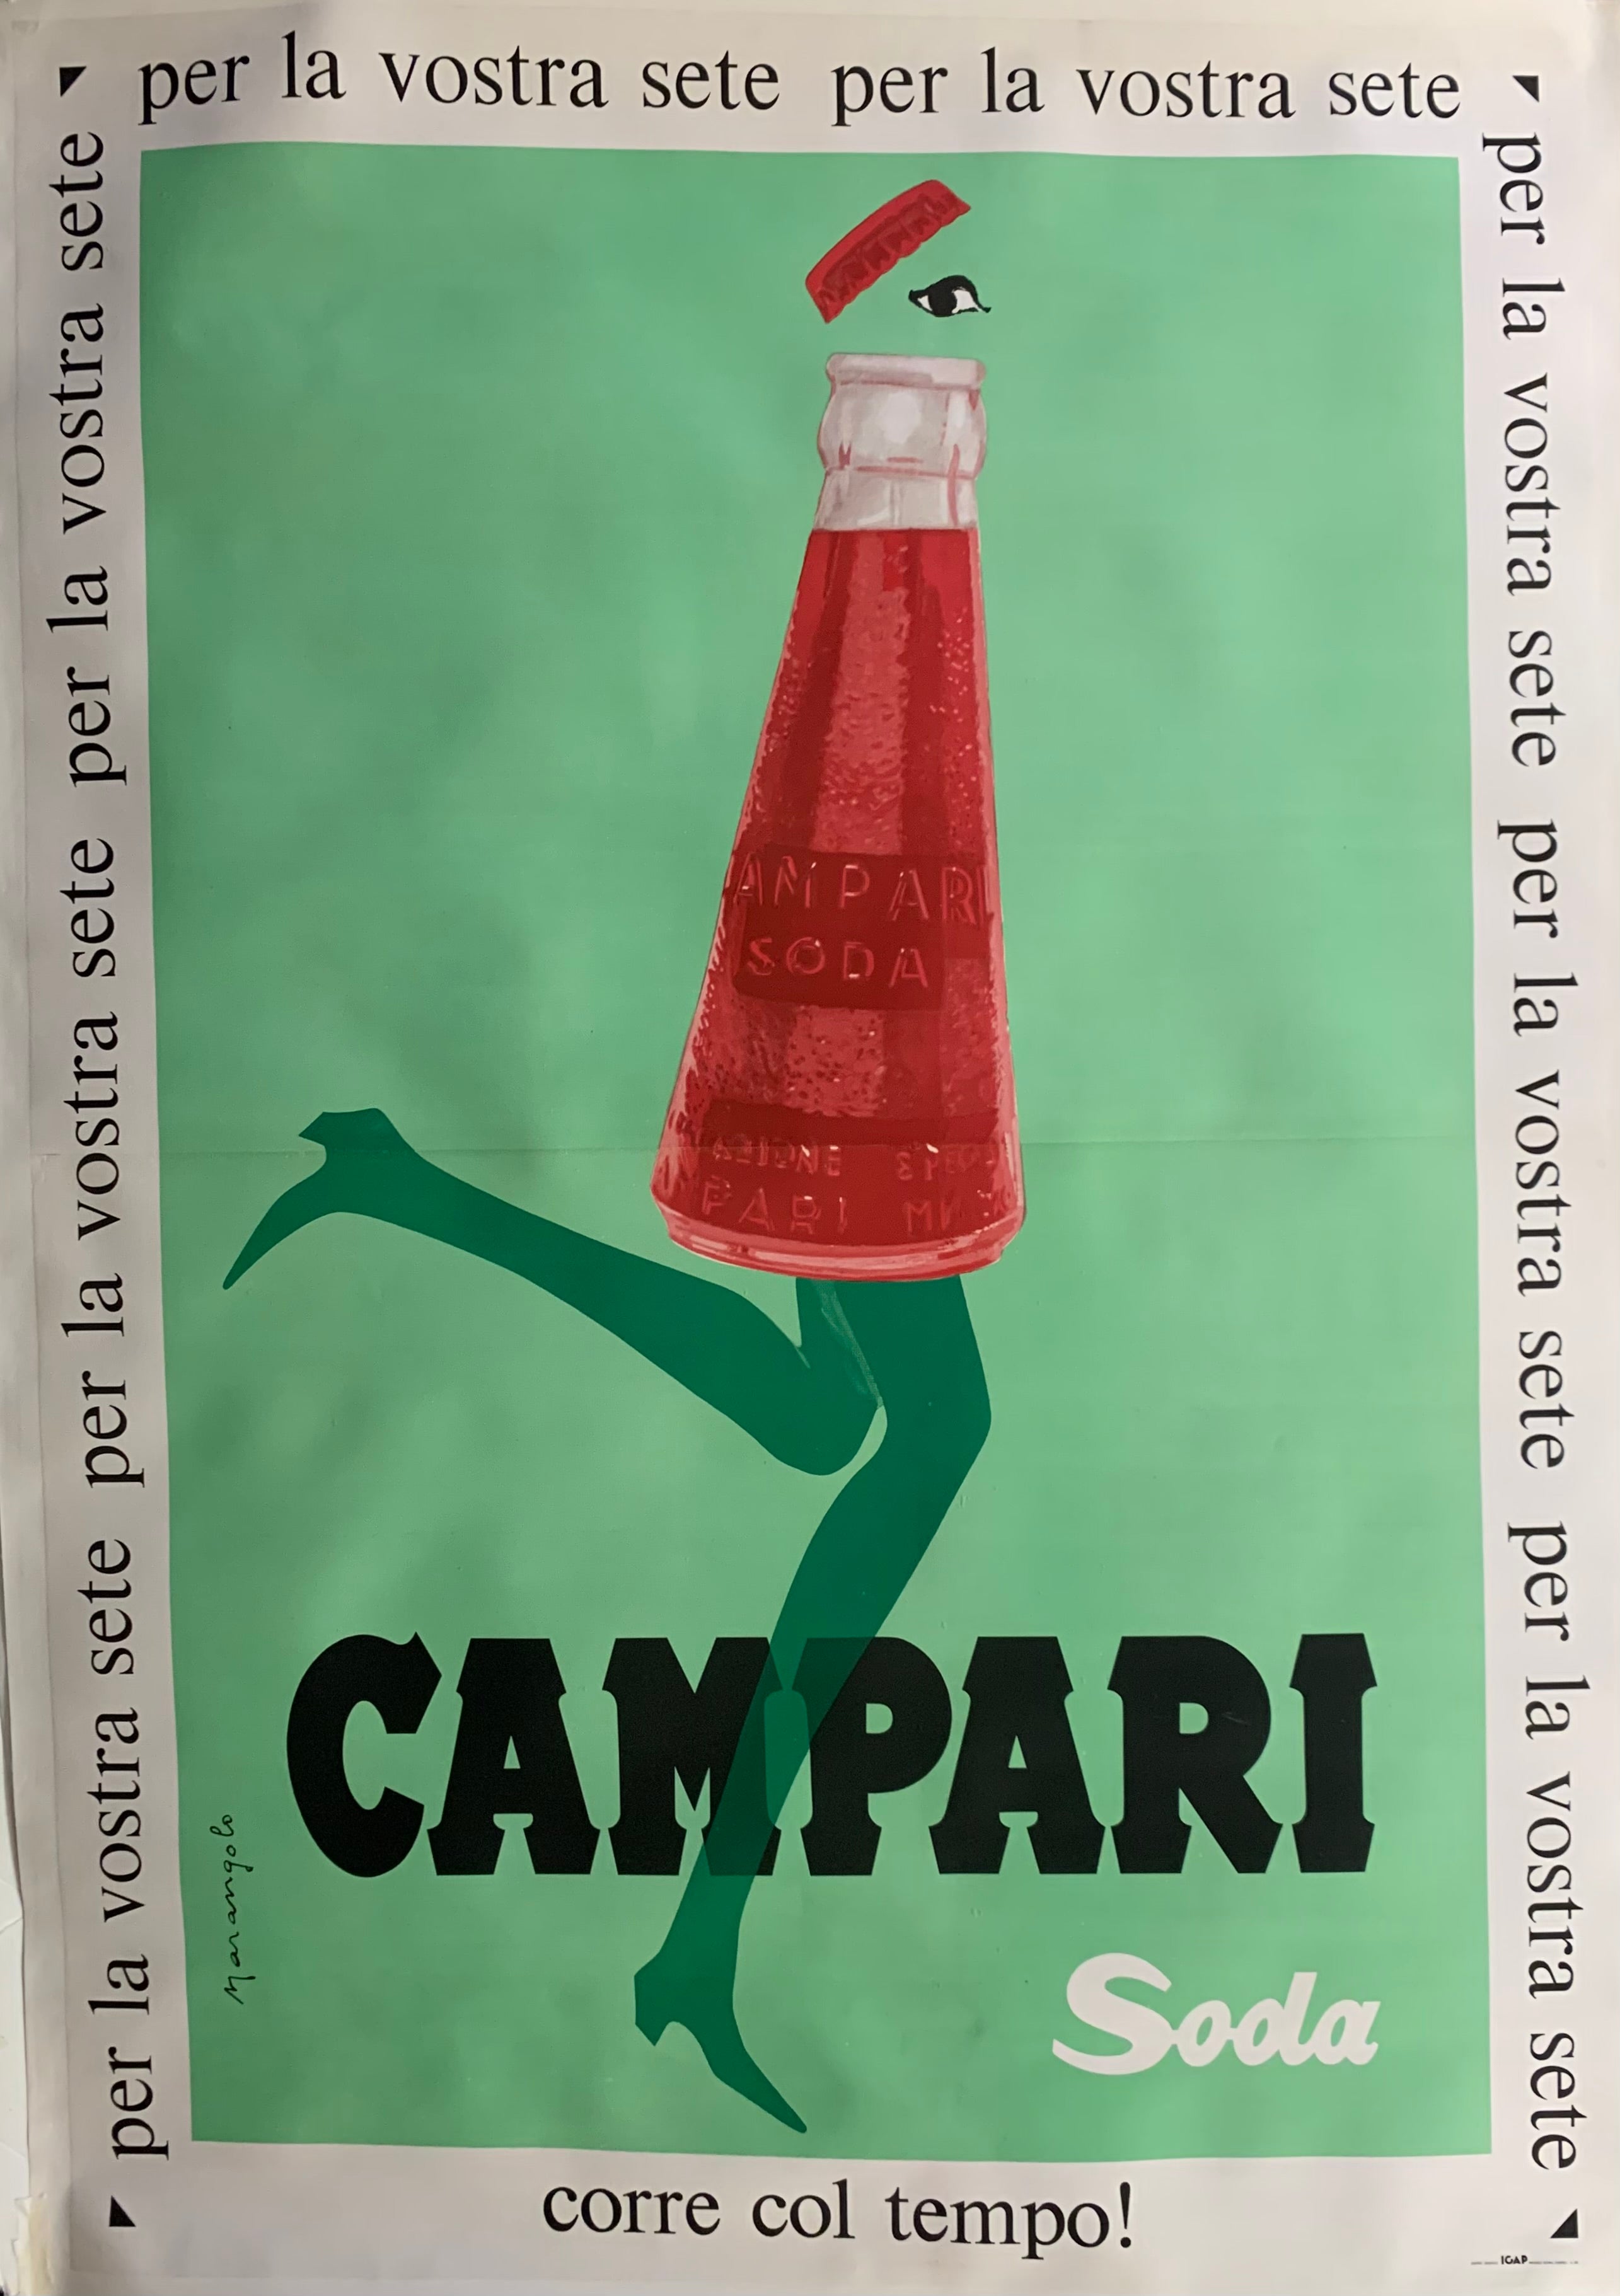 Campari Soda, Corre col tempo, per la vostra sete ✓ – Poster Museum